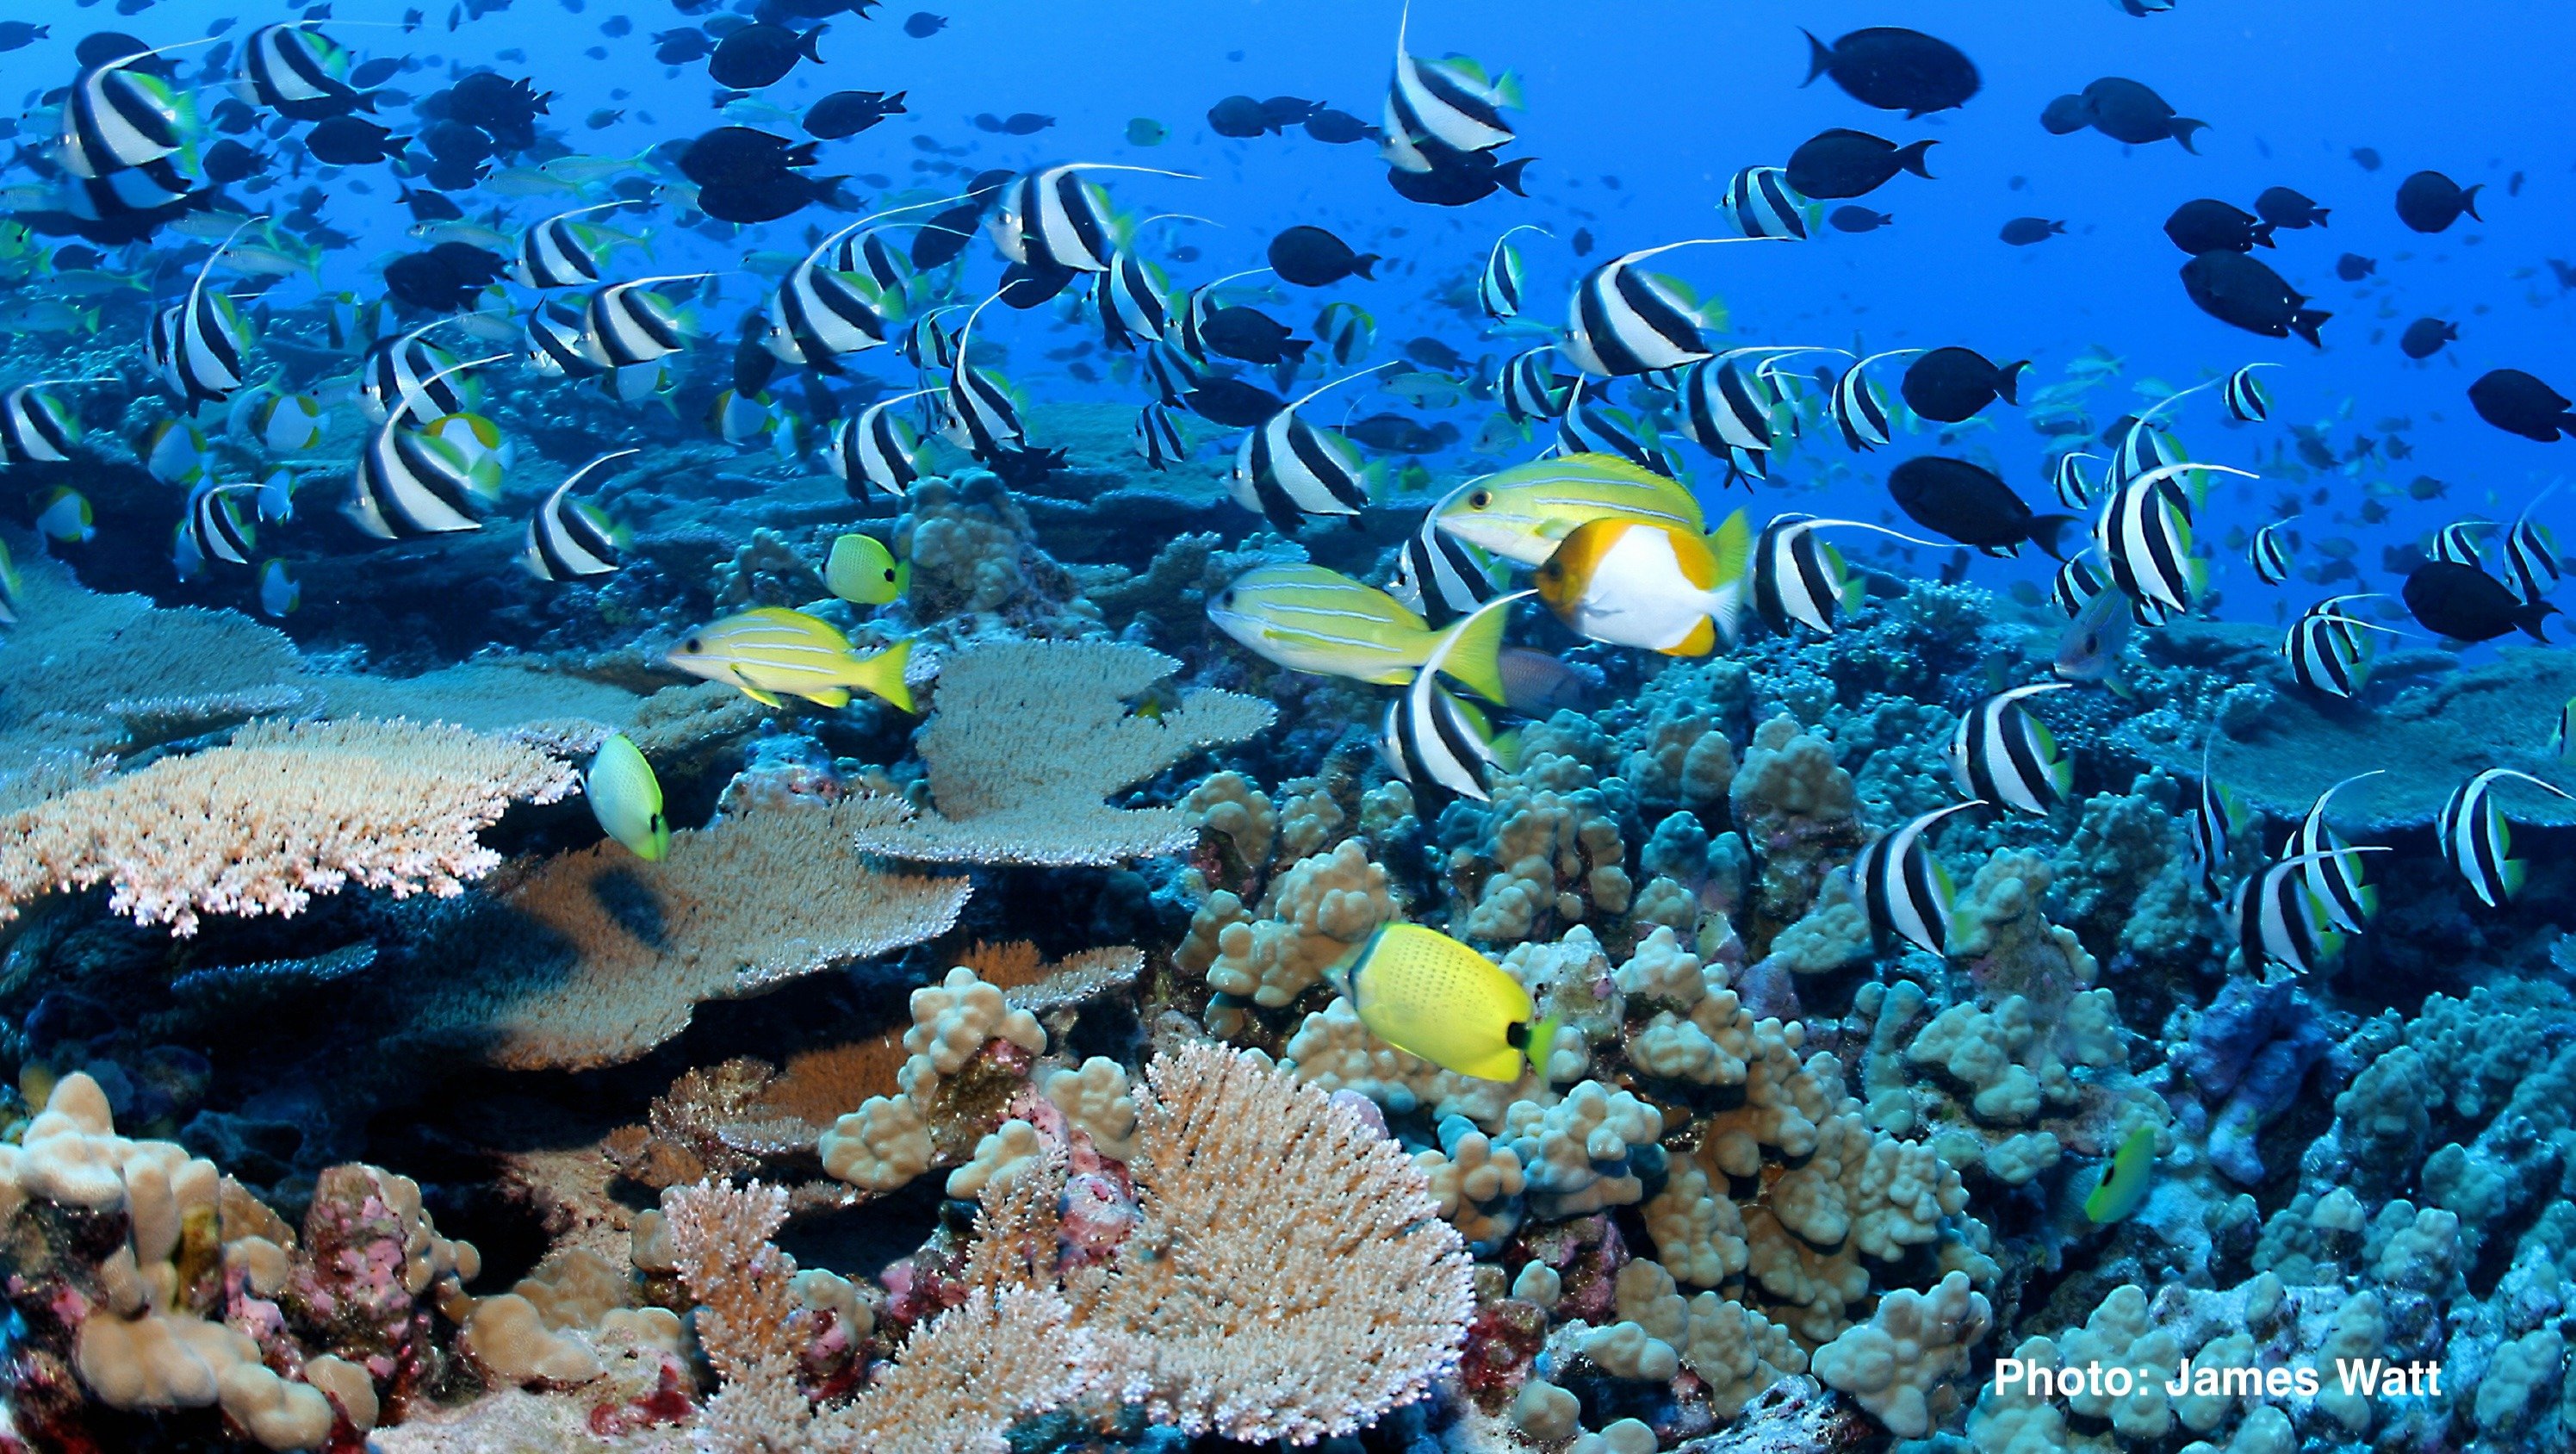 Hawaii's coral reefs